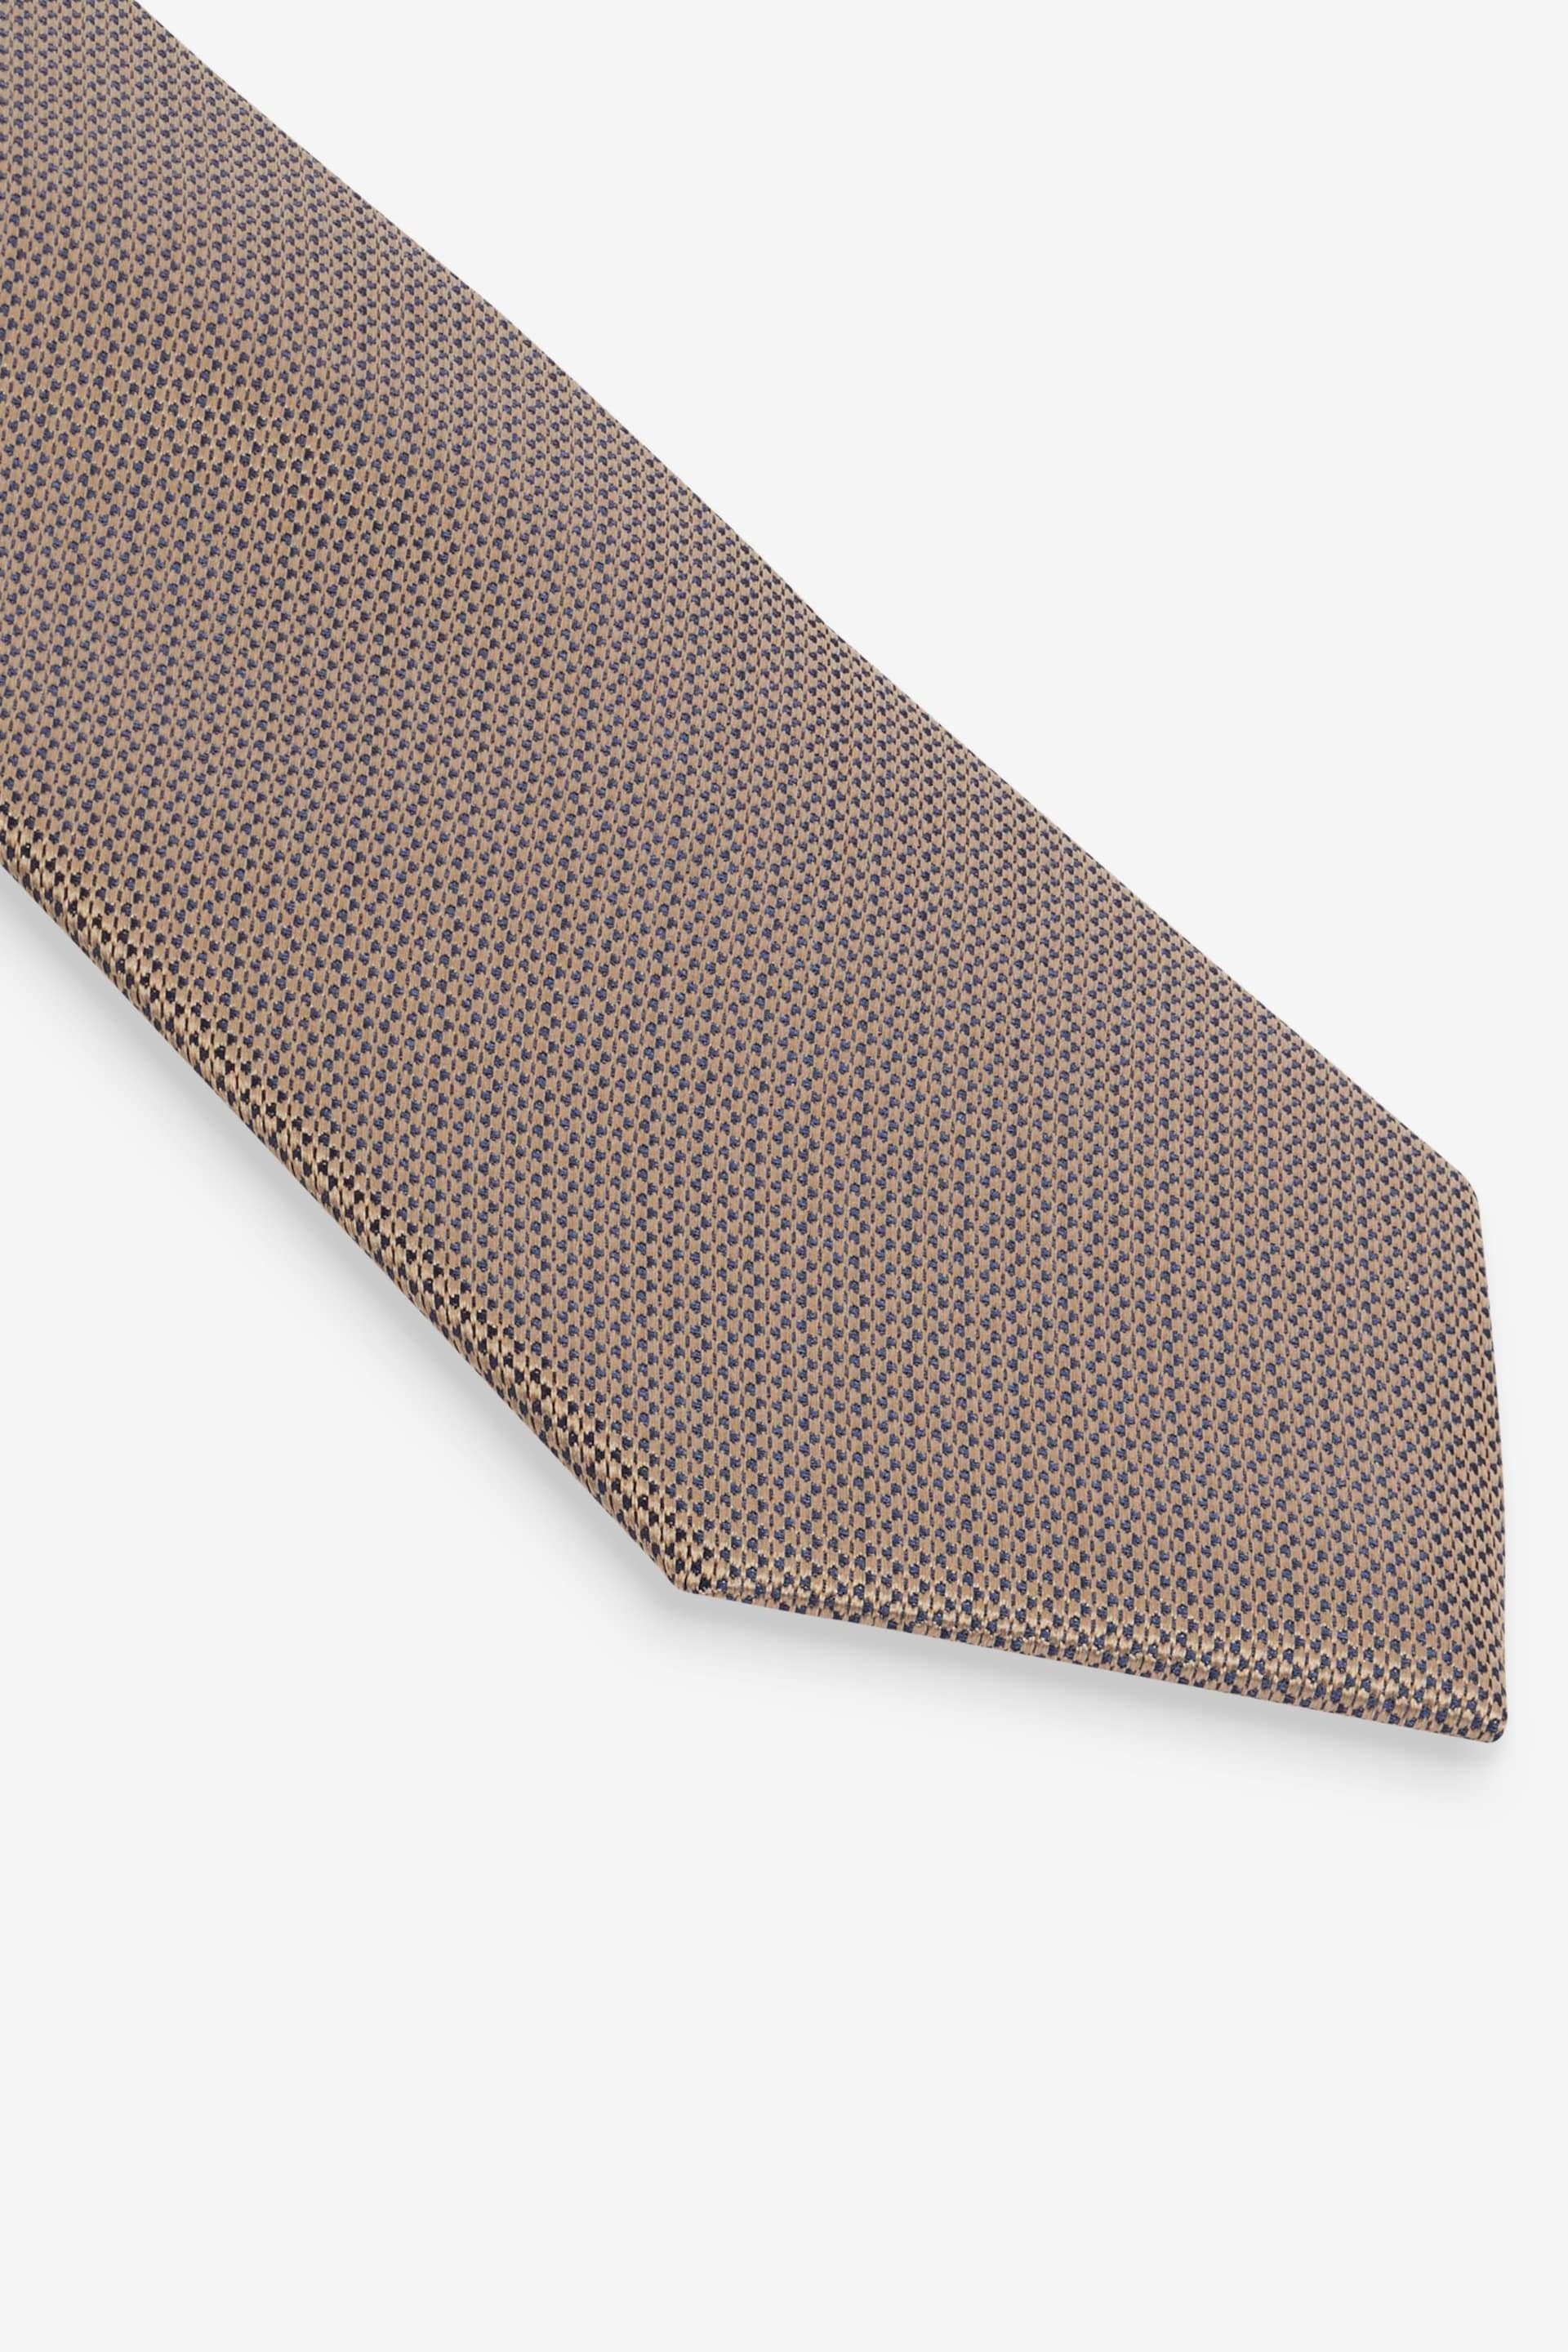 Neutral Brown/Rust Orange 2 Pack Textured Ties And Pocket Sqaure Set - Image 4 of 8